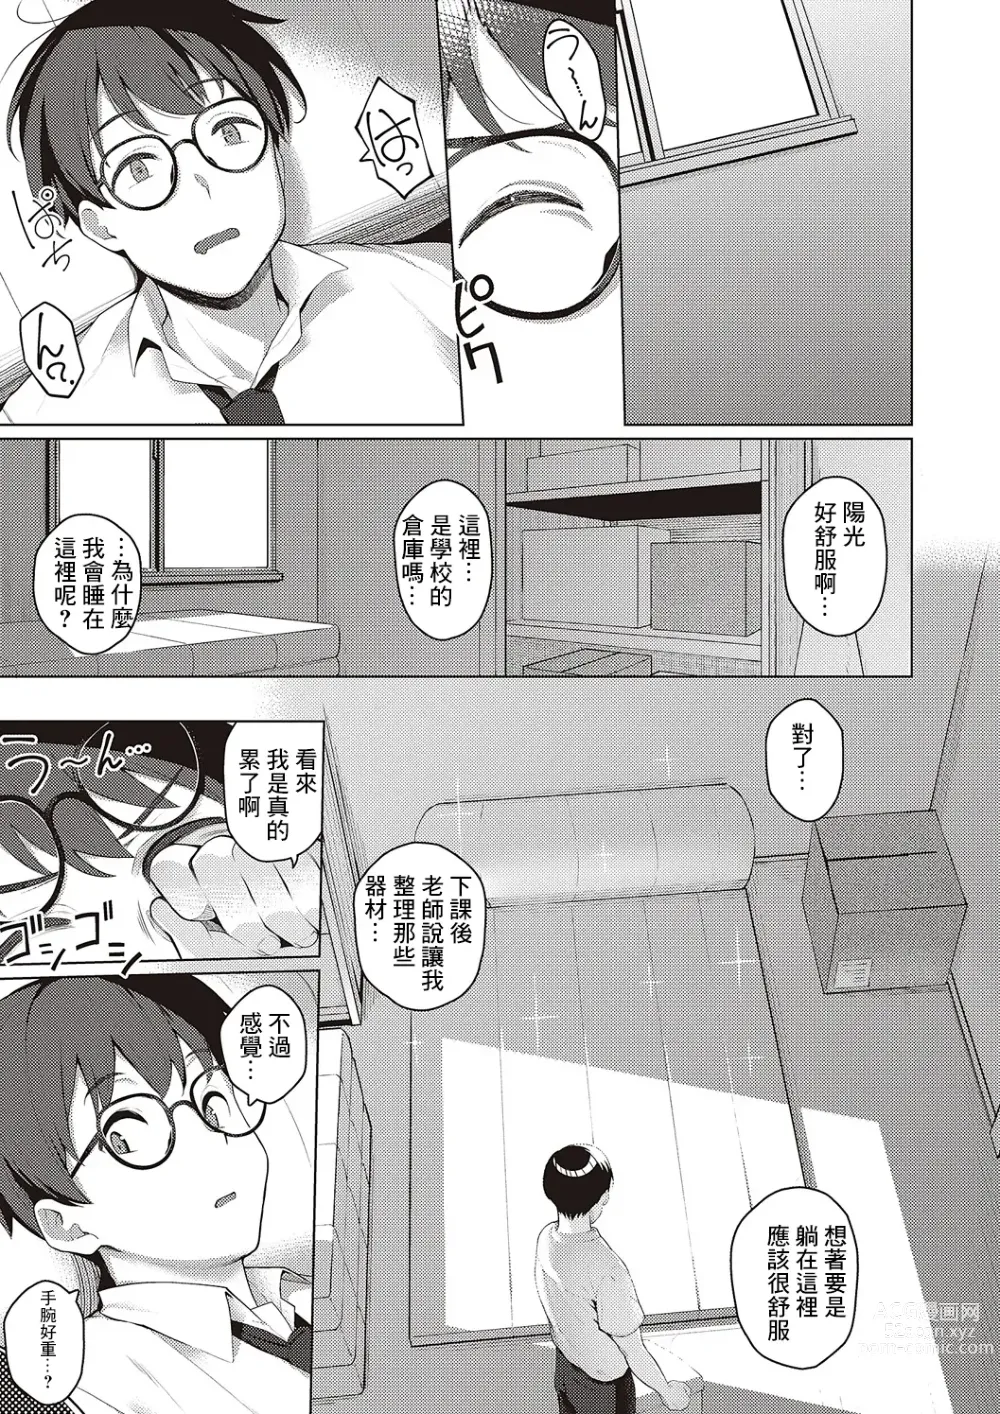 Page 3 of manga Majime to Fumajime